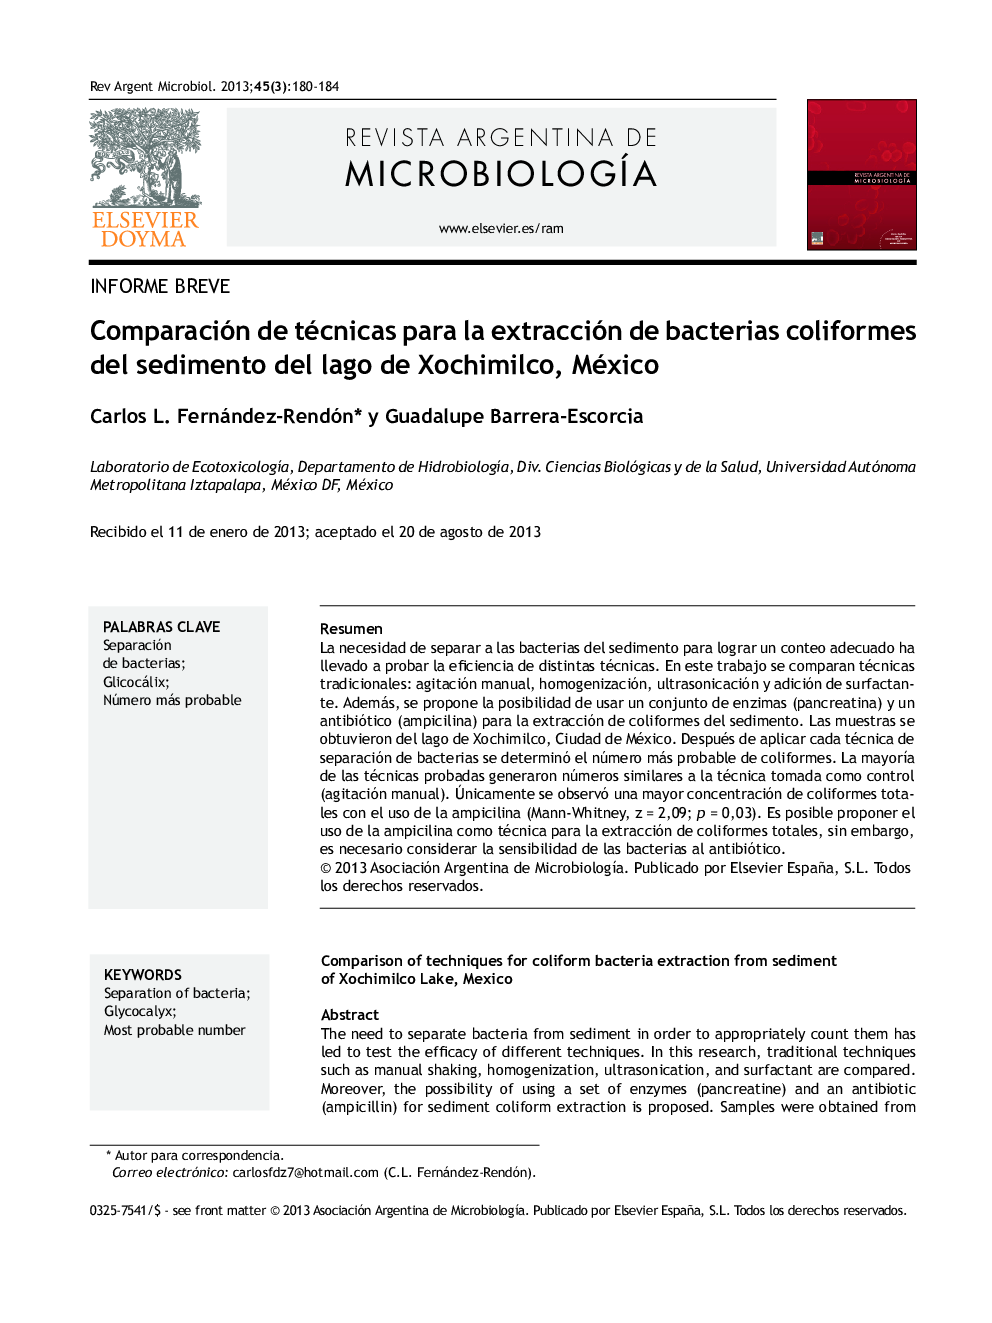 Comparación de técnicas para la extracción de bacterias coliformes del sedimento del lago de Xochimilco, México